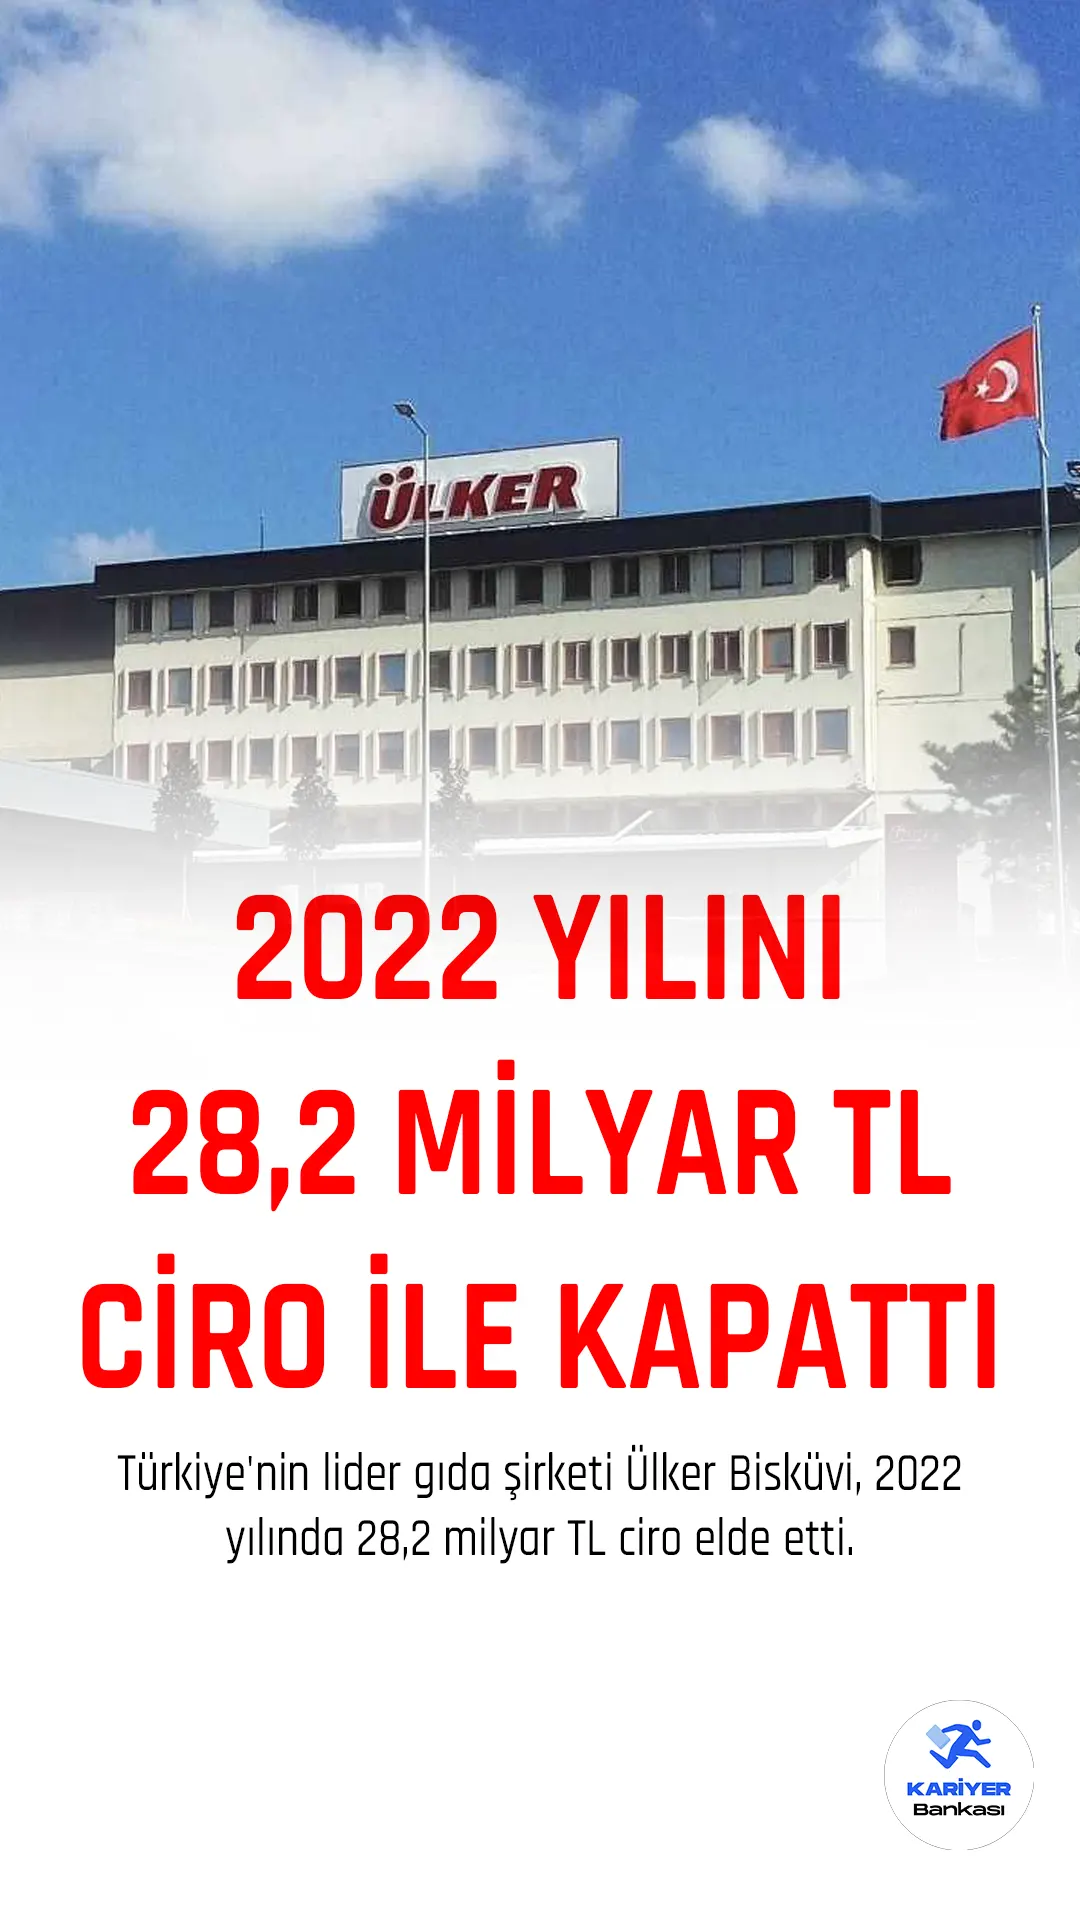 Türkiye'nin lider gıda şirketi Ülker Bisküvi, 2022 yılında 28,2 milyar TL ciro elde etti. Şirket, Türkiye operasyonlarının ciro içindeki payının yüzde 62, ihracat ve yurt dışı operasyonlarının ciro içindeki payının ise yüzde 38 olduğunu açıkladı.